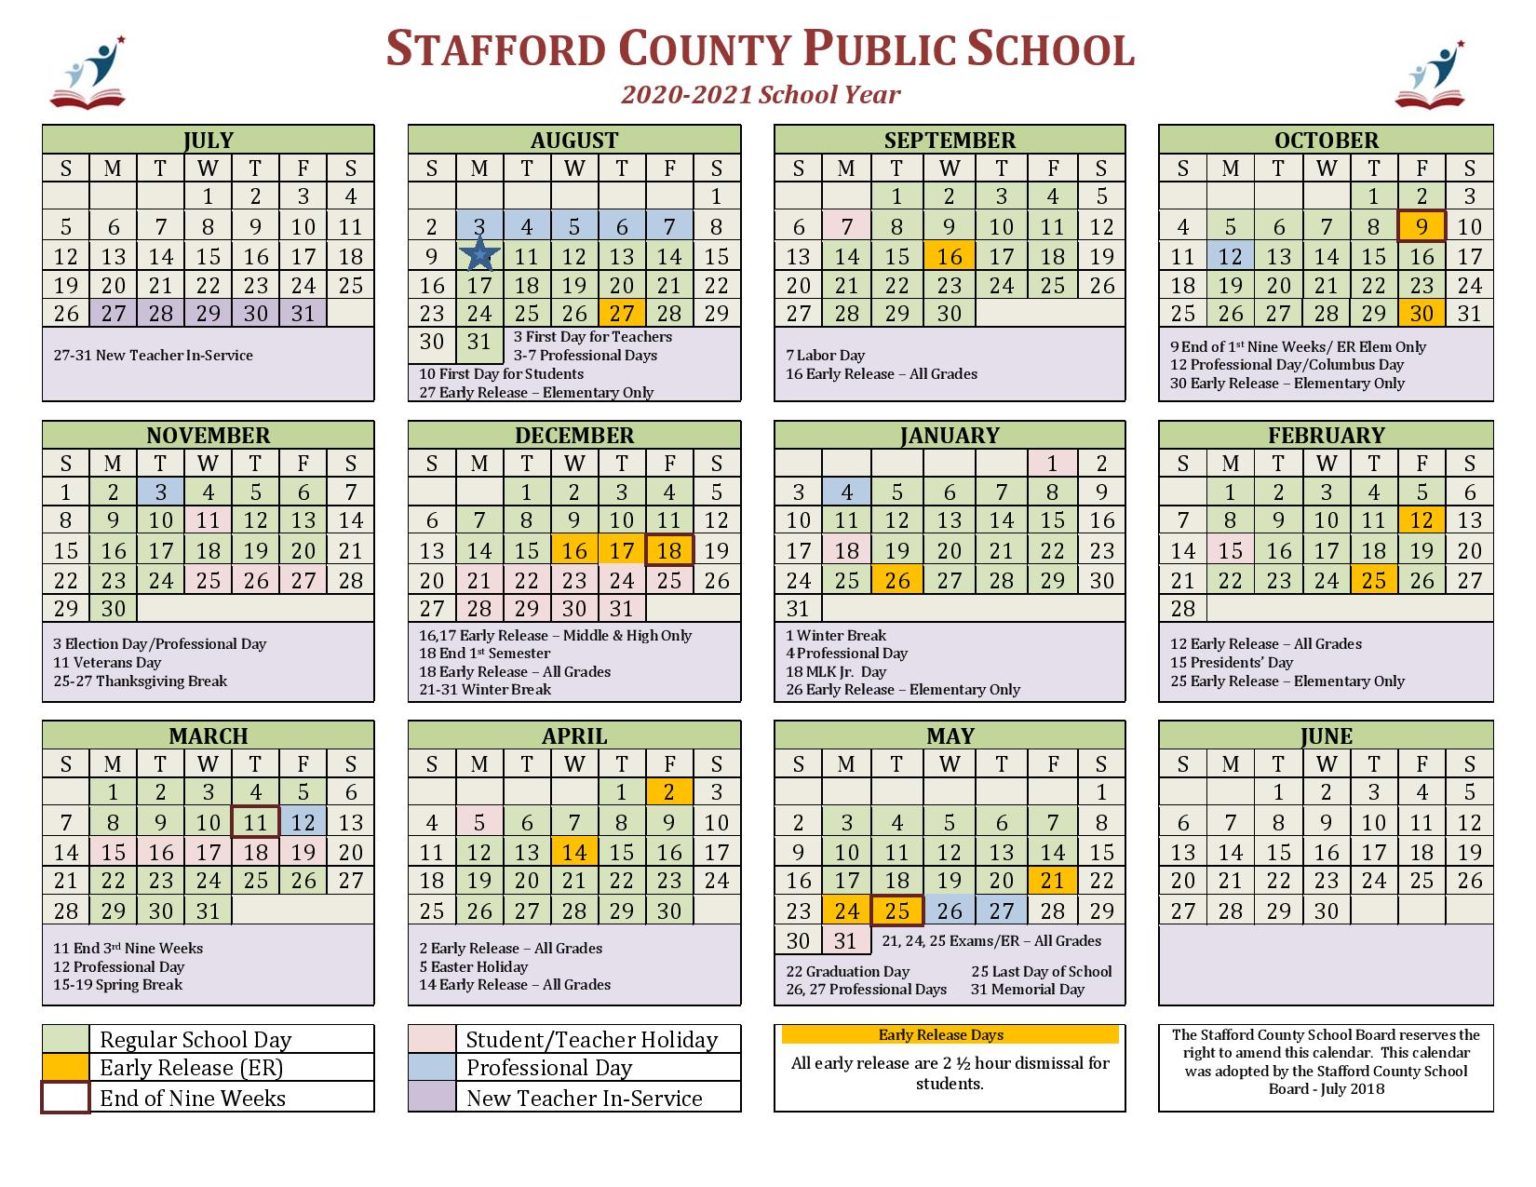 Stafford County Public Schools Calendar 2020 2021